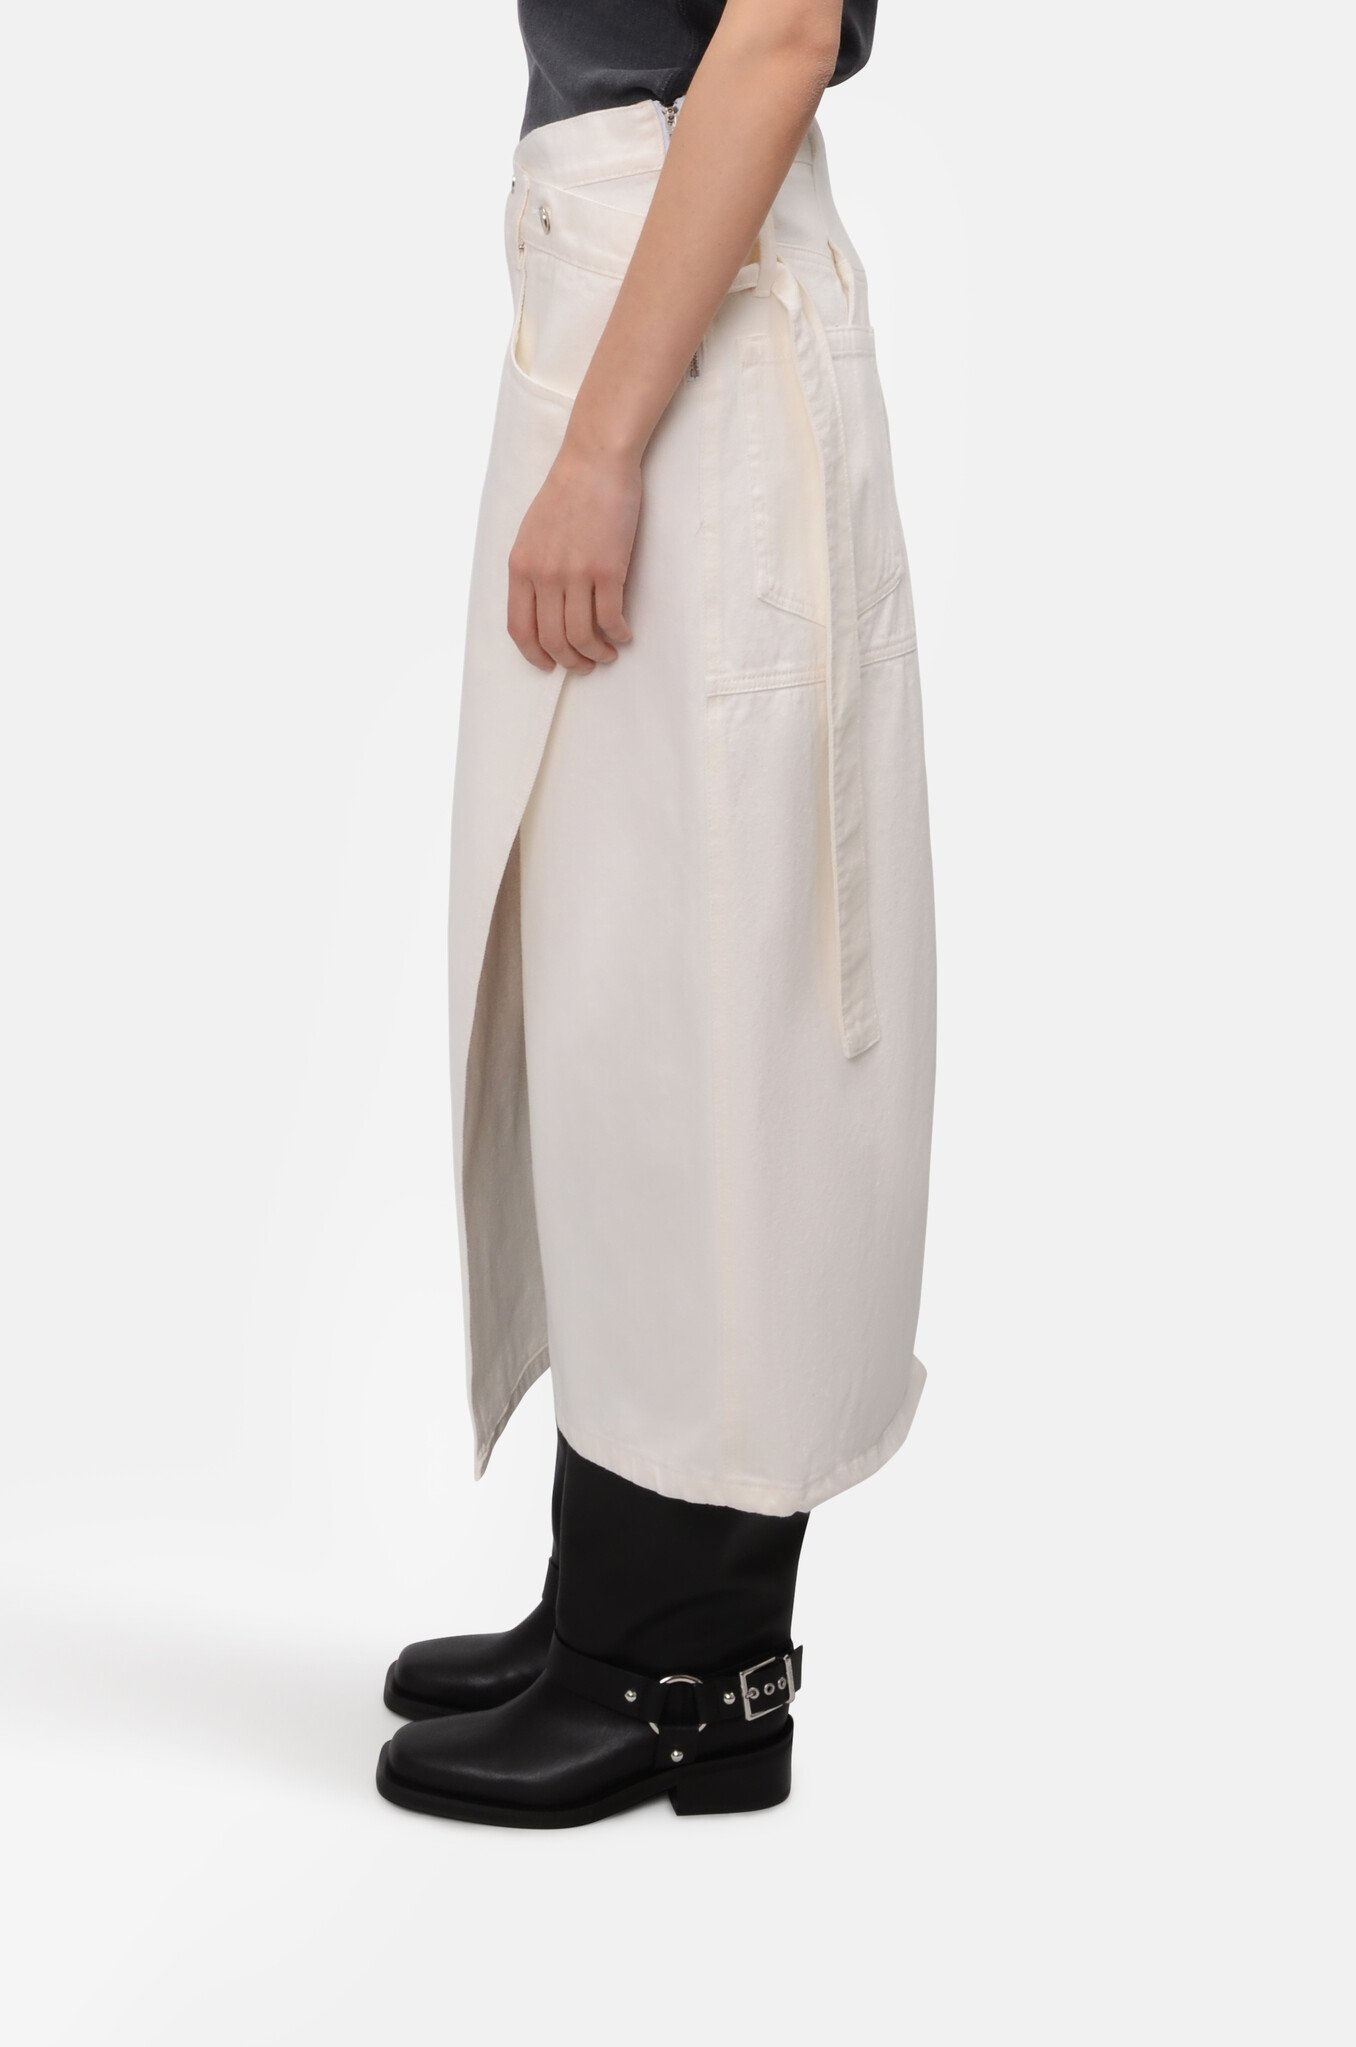 Wrap Long Skirt in Off White-3